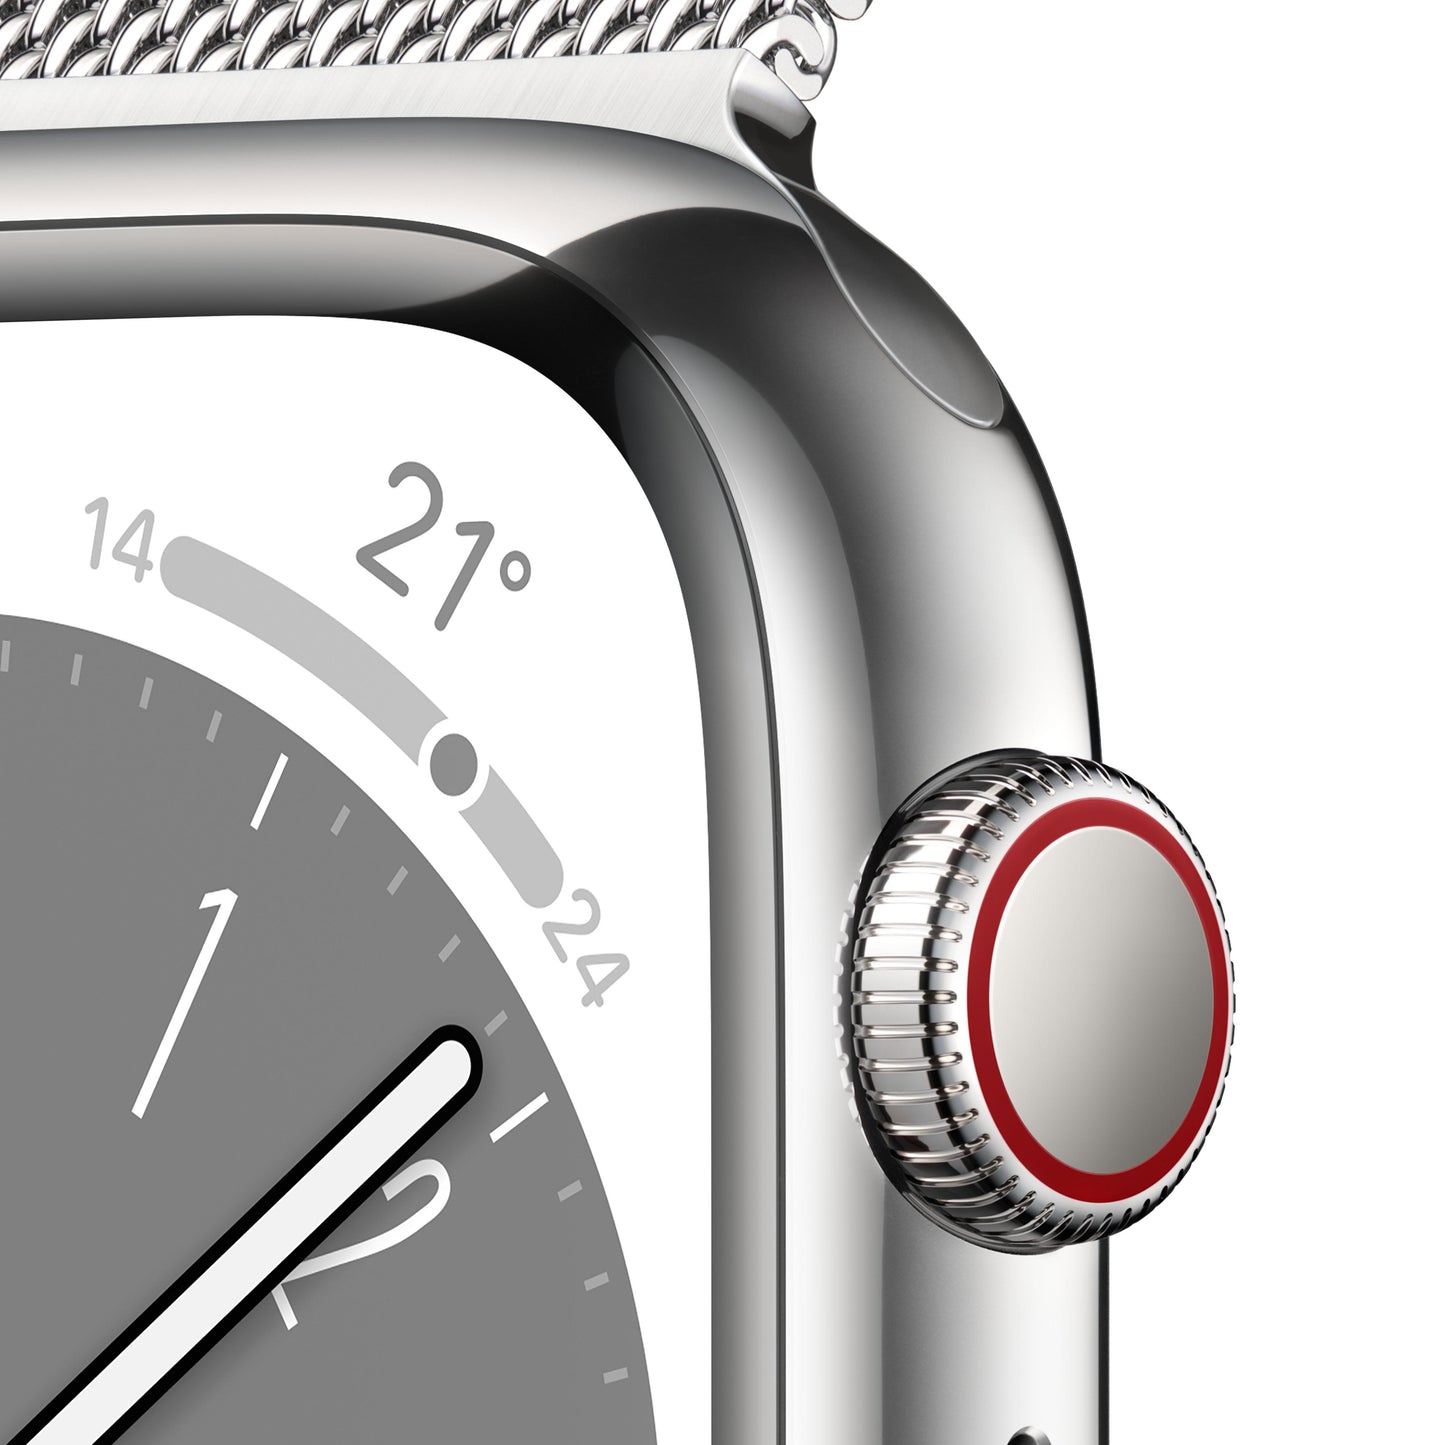 Apple Watch Series 8 (GPS + Cellular) - Caja de acero inoxidable en plata de 41 mm - Pulsera Milanese Loop en plata